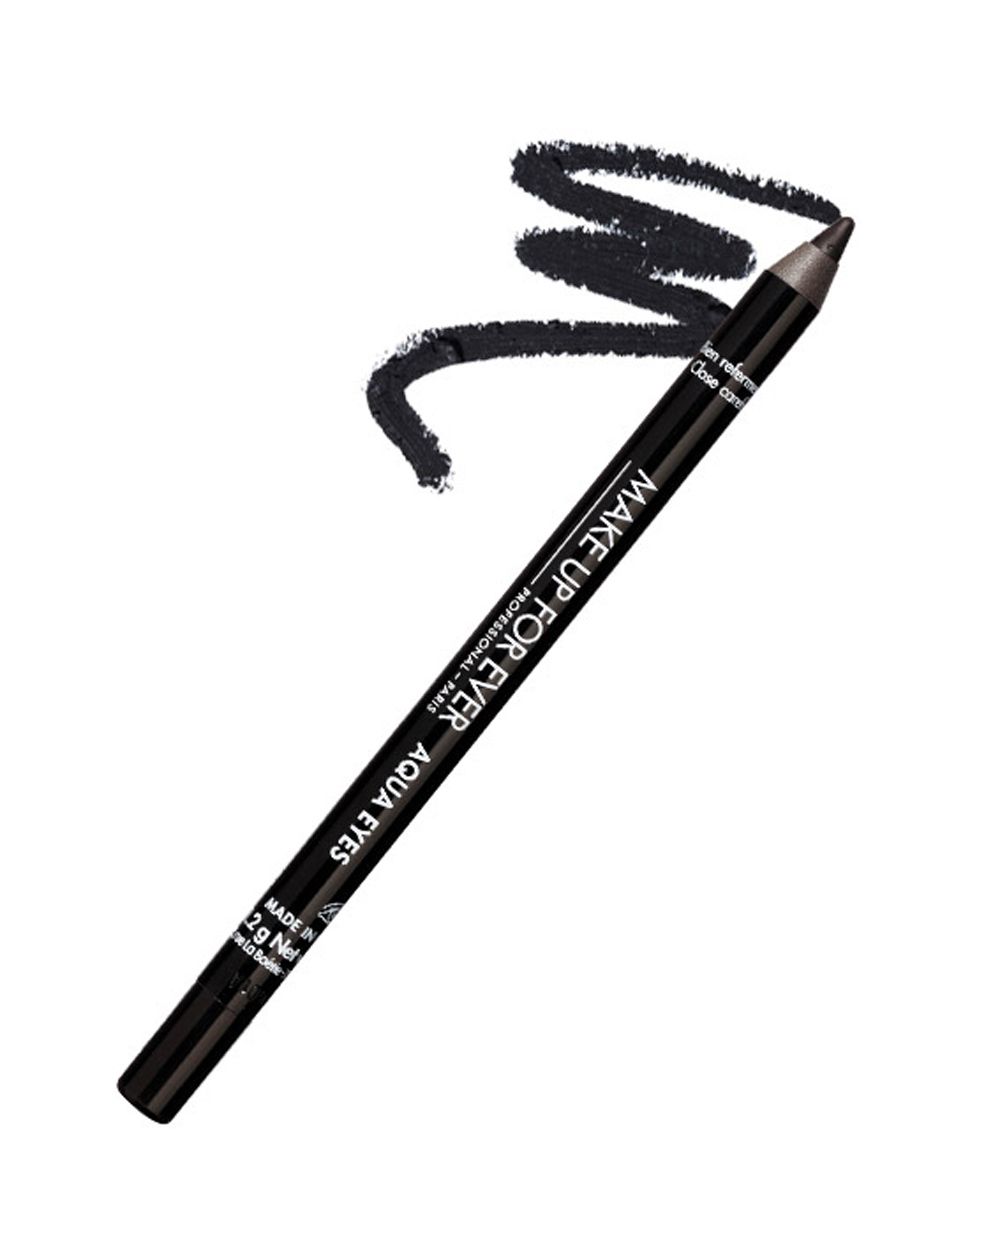 Make Up For Ever Aqua Eyes Eyeliner Pencil